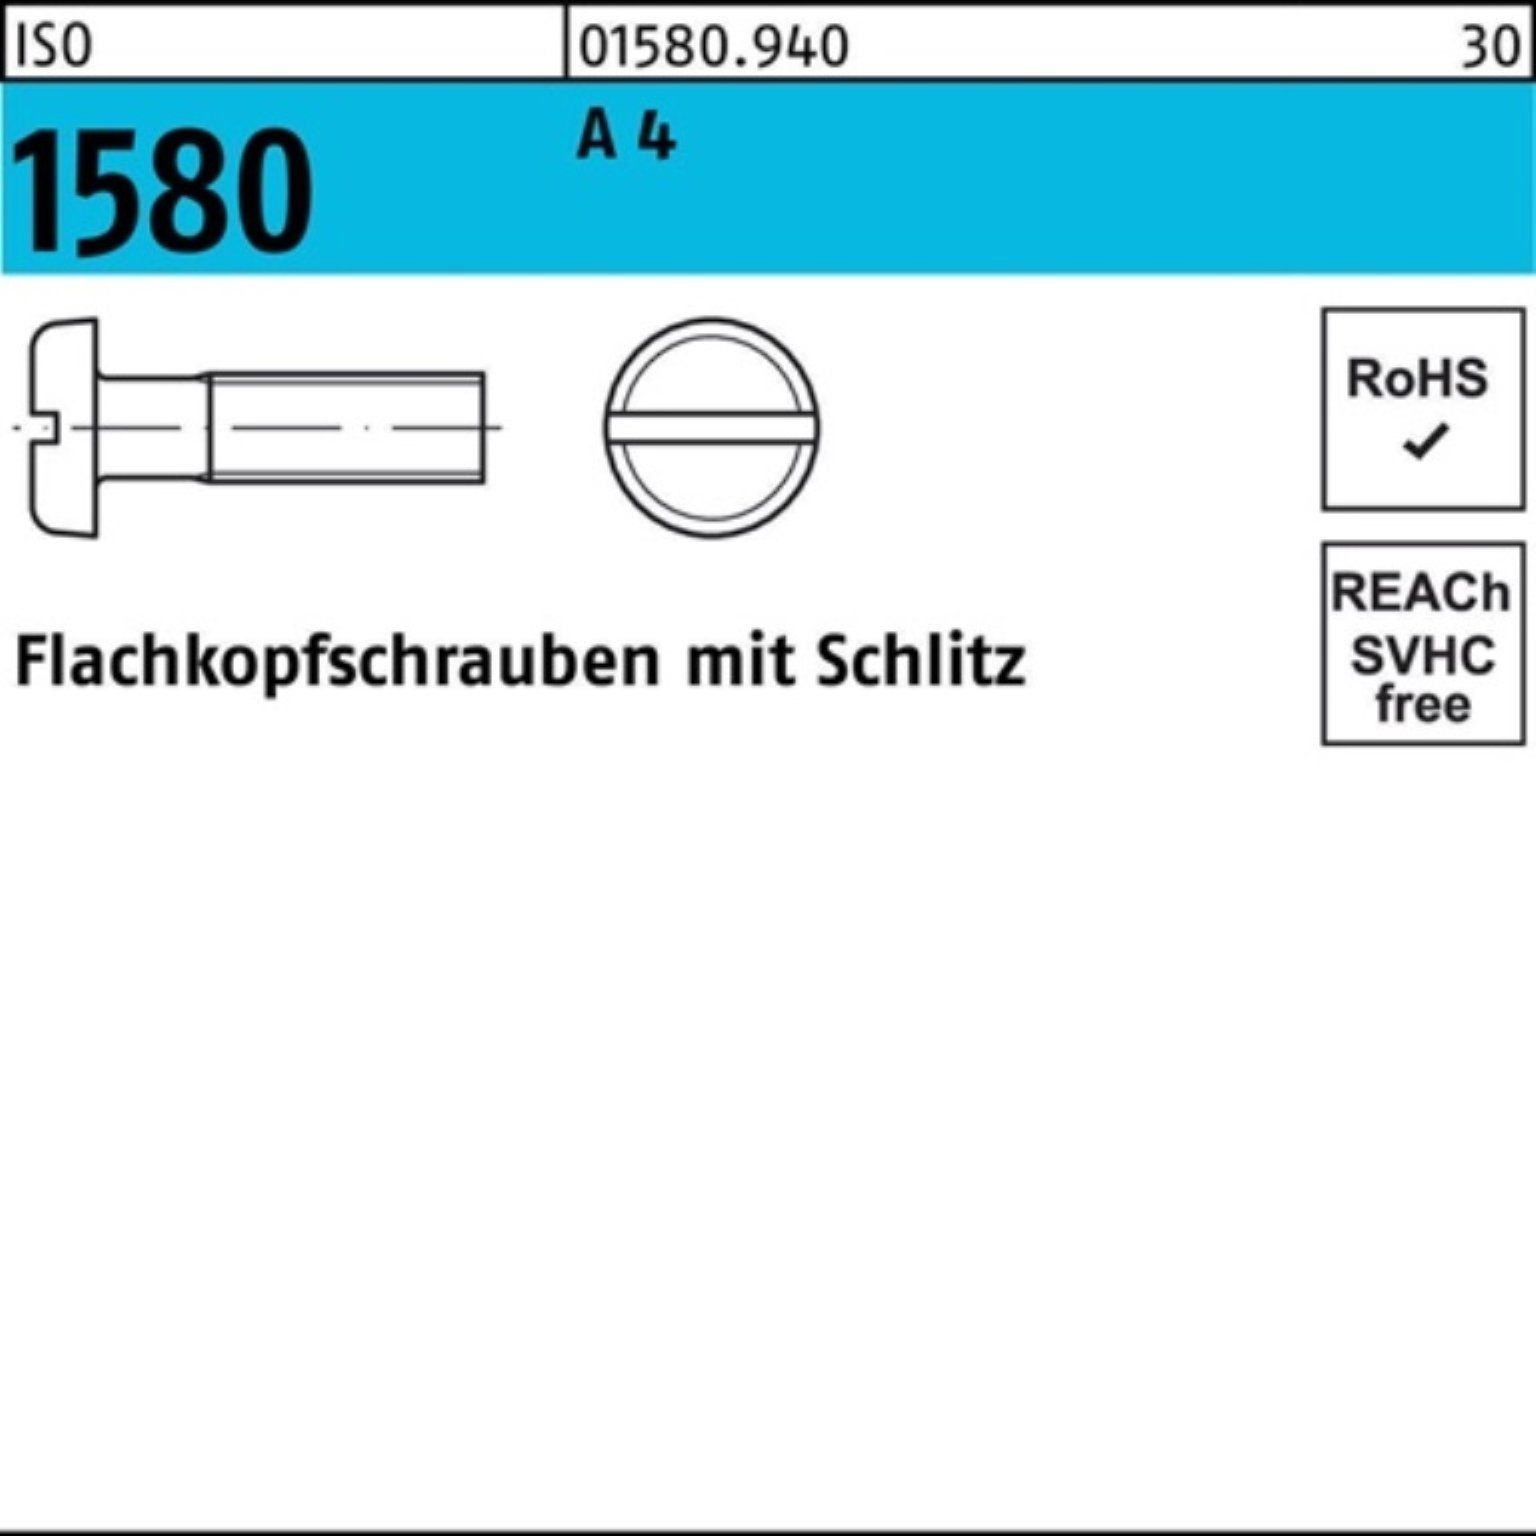 Hochwertig Reyher Schraube 500er 10 Flachkopfschraube 4 IS M5x Pack 500 A 1580 ISO Stück Schlitz